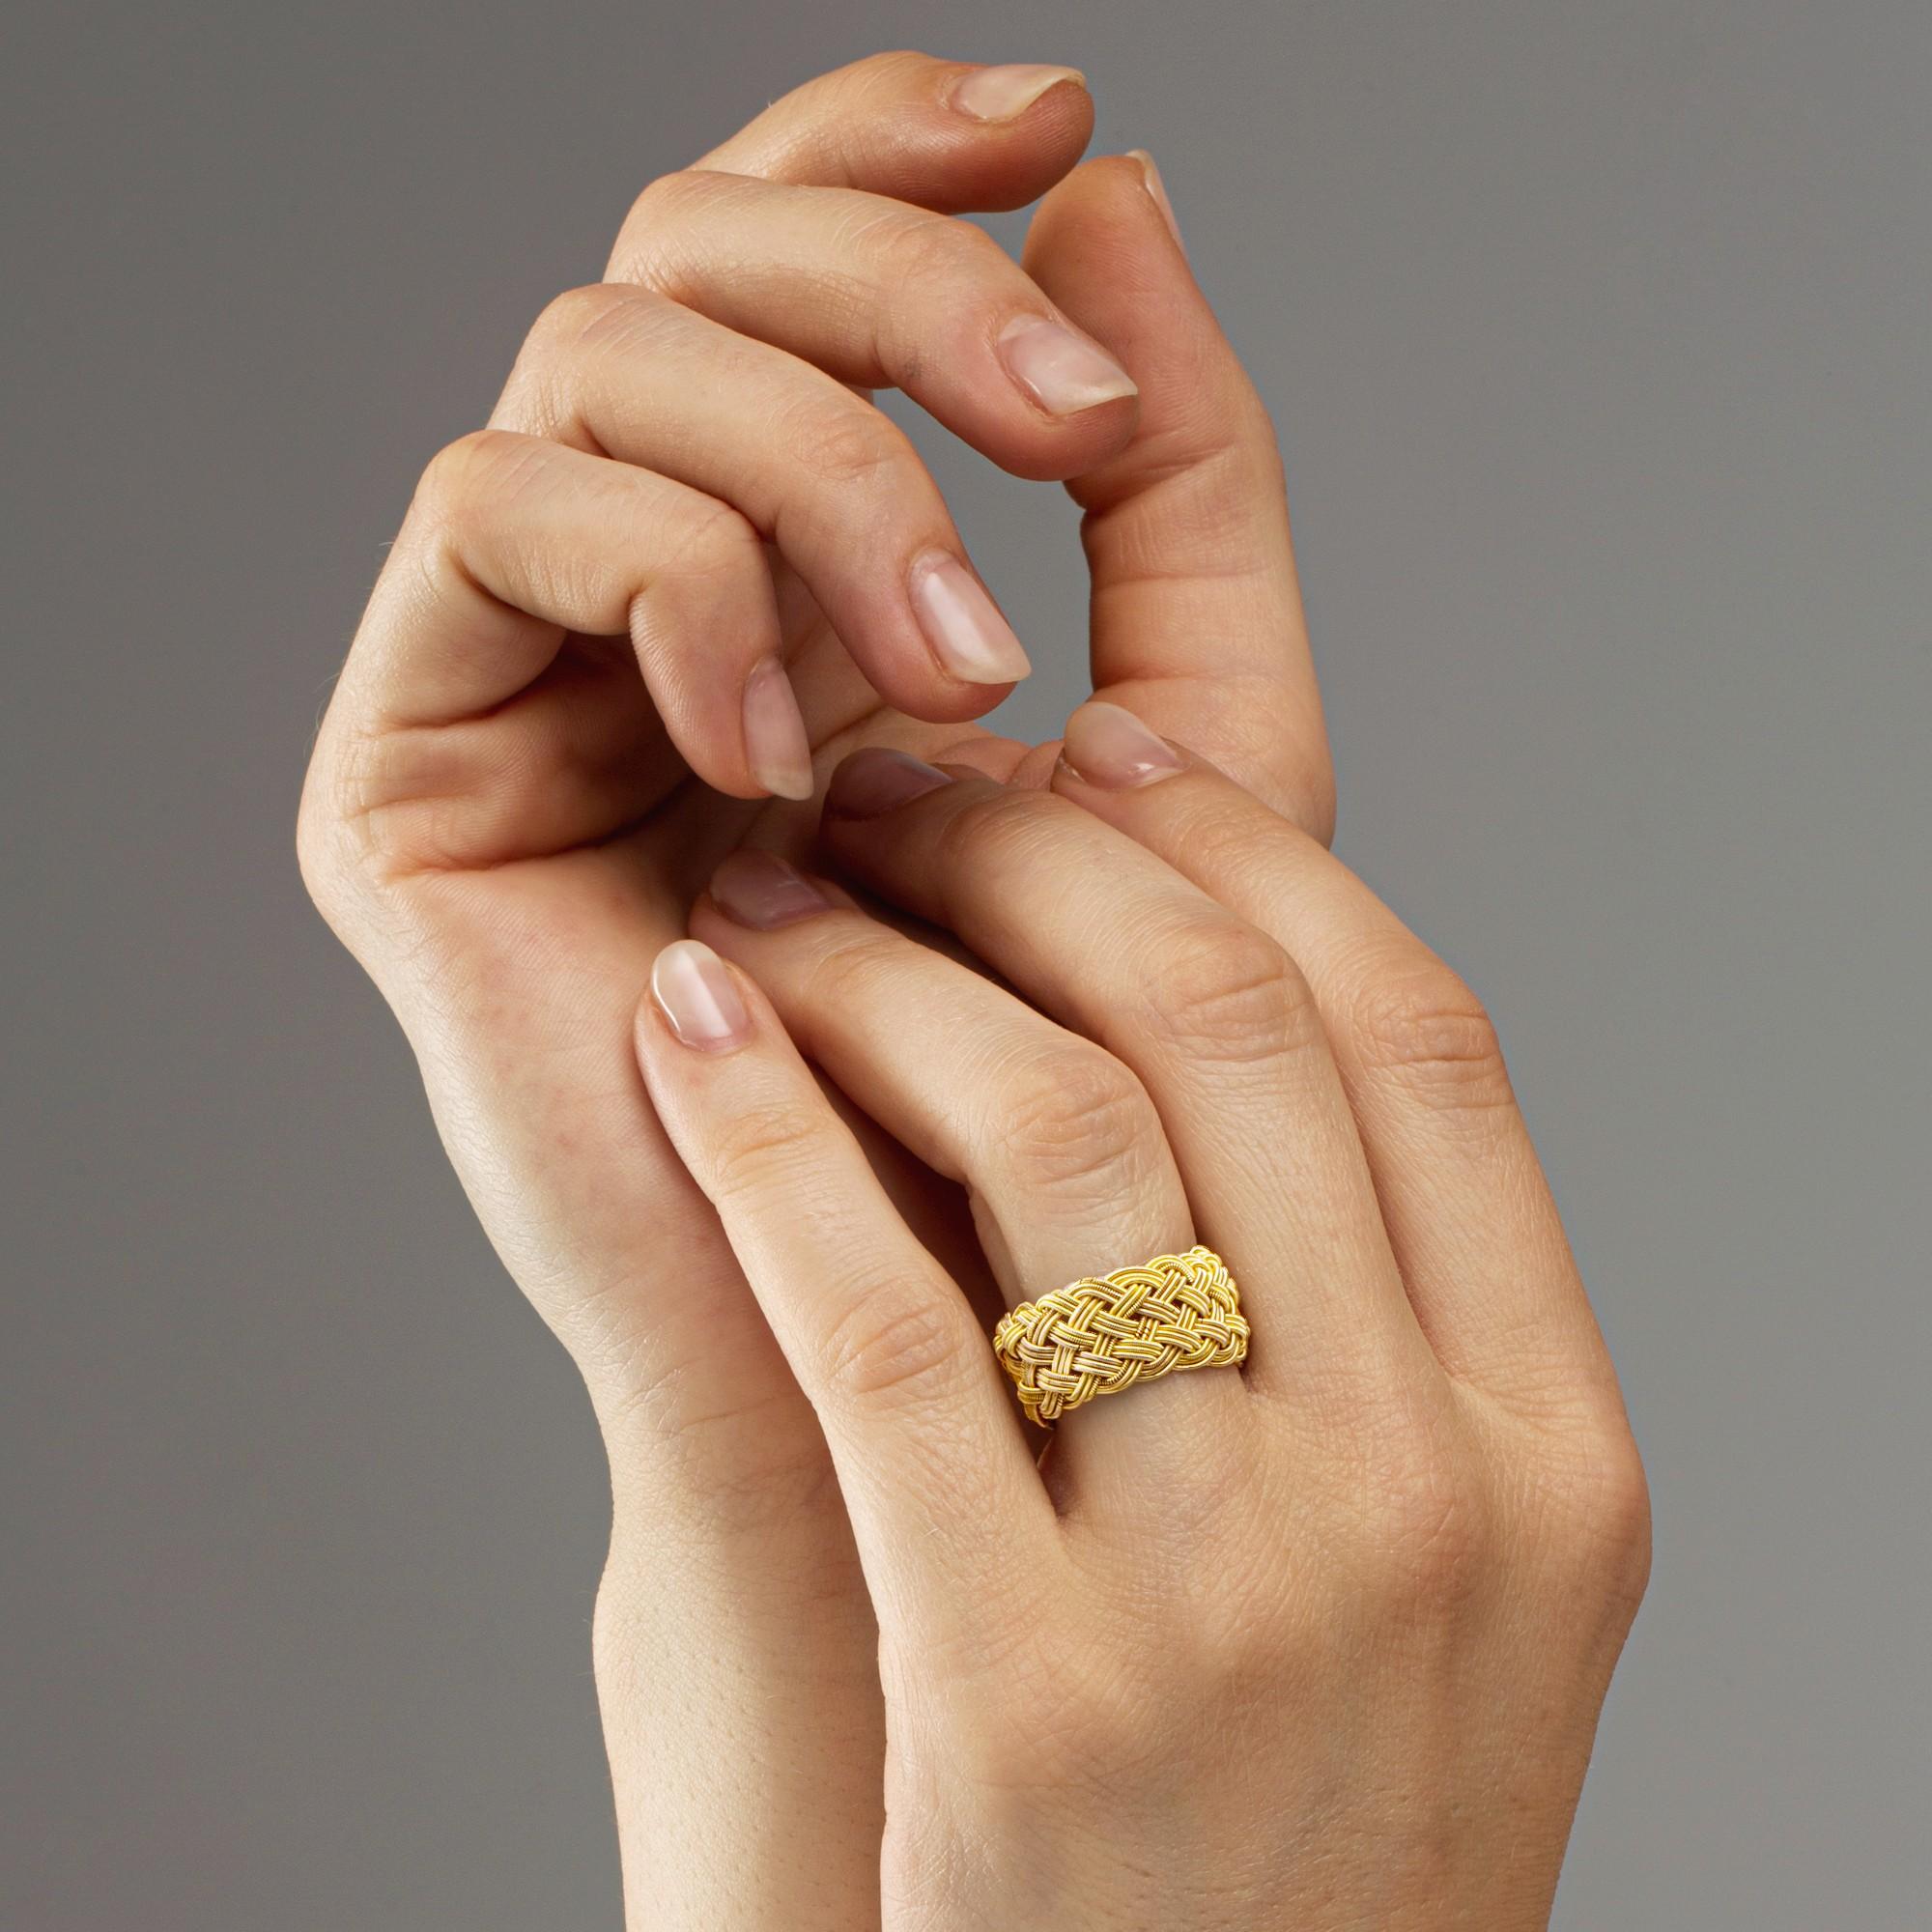 Alex Jona design collection, handgefertigt in Italien, Filigranband aus 18 Karat Gelbgold  Ring. 
Dieser Ring ist in allen Größen erhältlich. Da es sich um eine Handarbeit handelt, können die Abmessungen variieren.
Die Juwelen von Alex Jona zeichnen